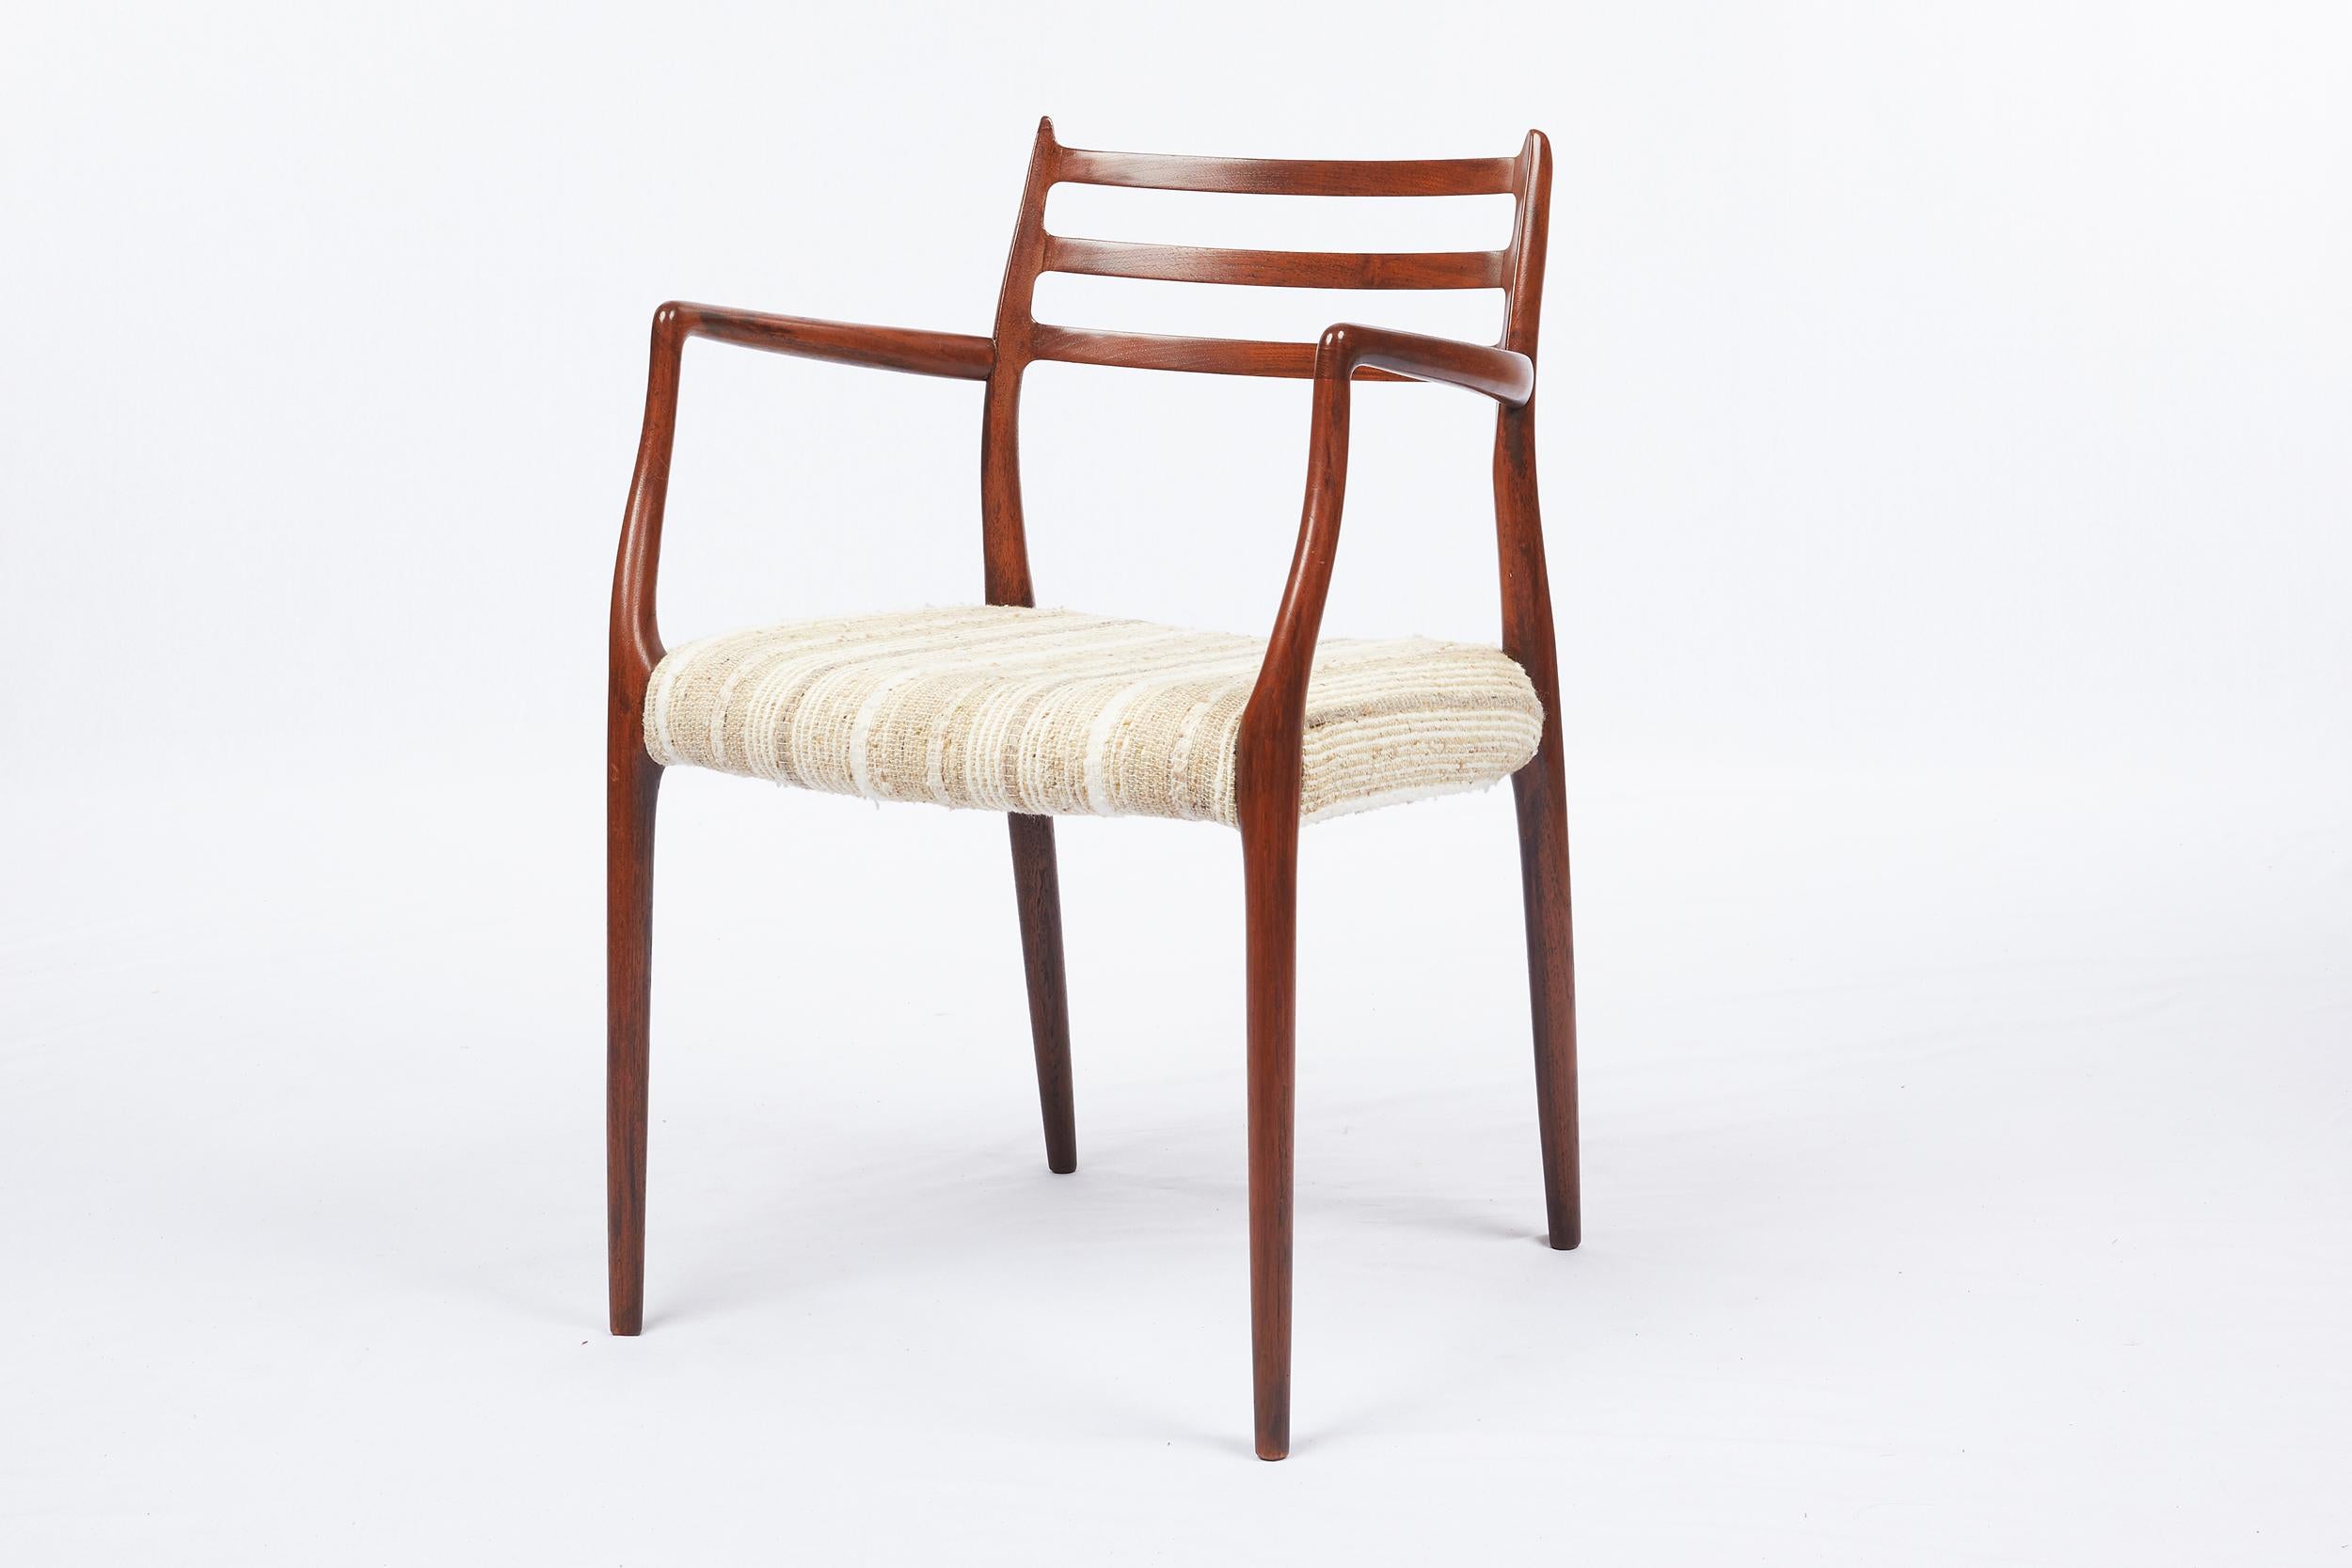 Paire de fauteuils en teck Niels Moller Modèle 62 Conçu en 1962 et produit par J. L. Moller Mobelfabrik.